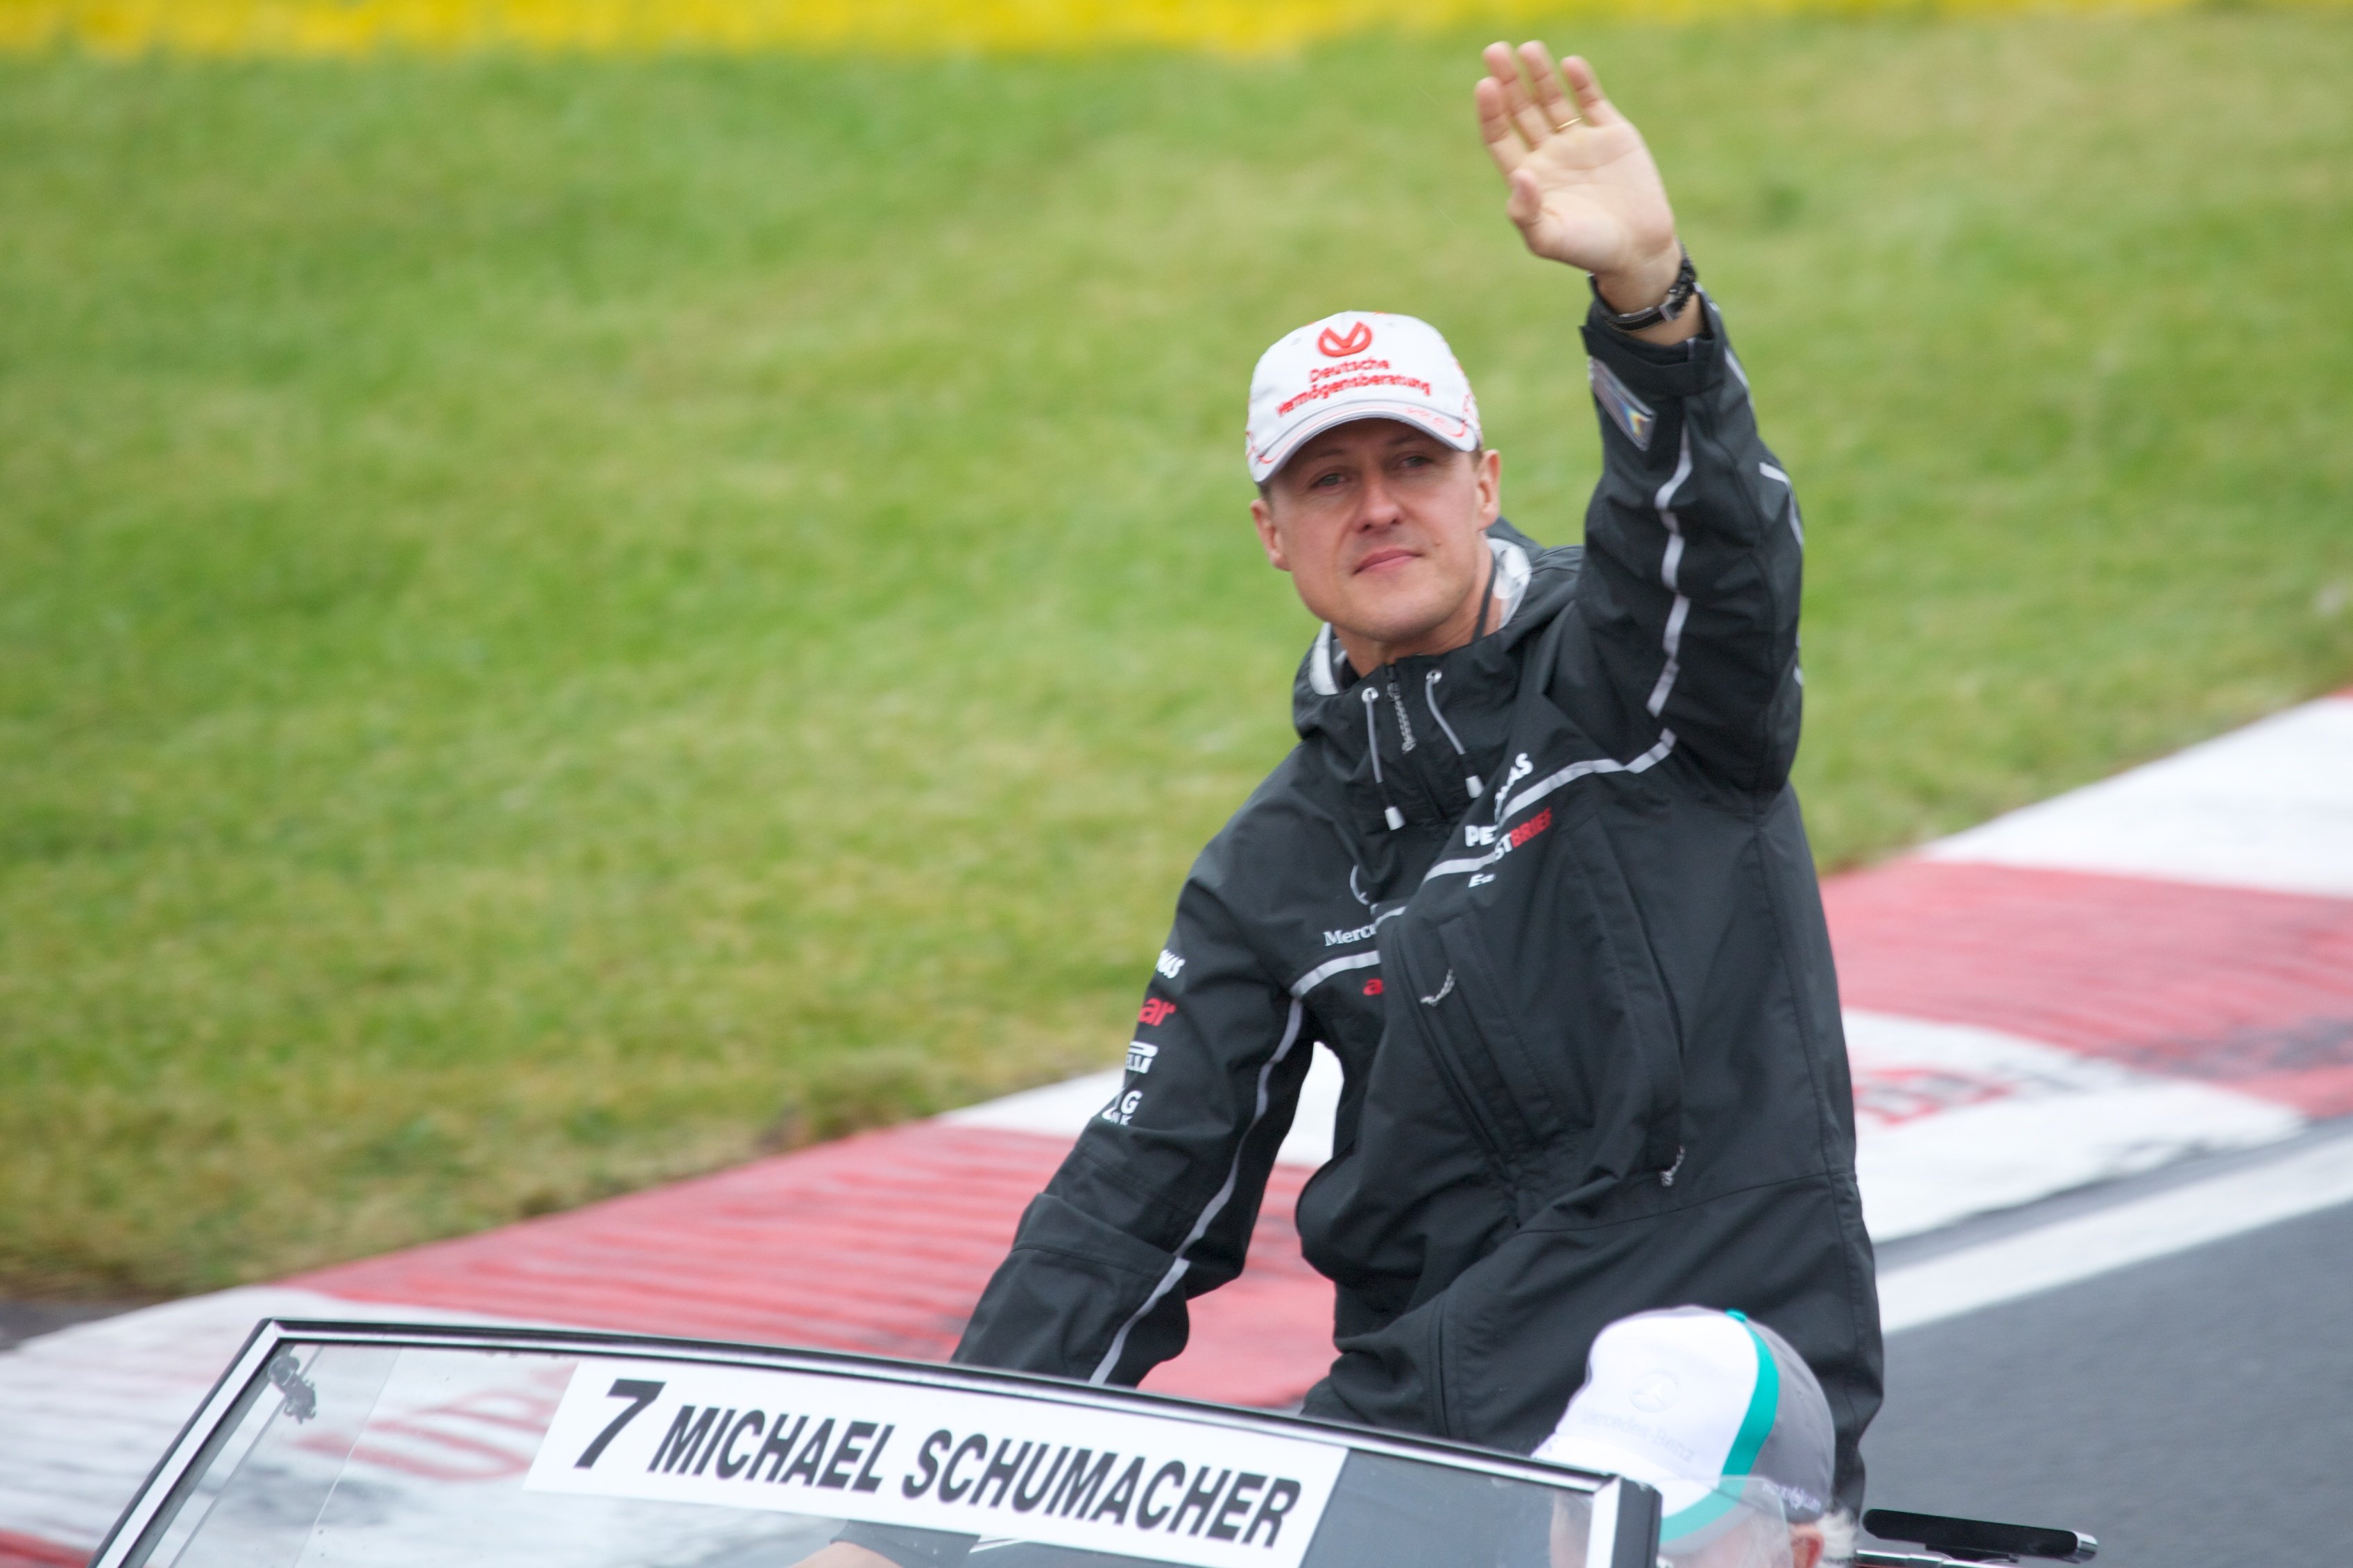 Novedades sobre el estado de salud de Schumacher: "Está muy deteriorado"